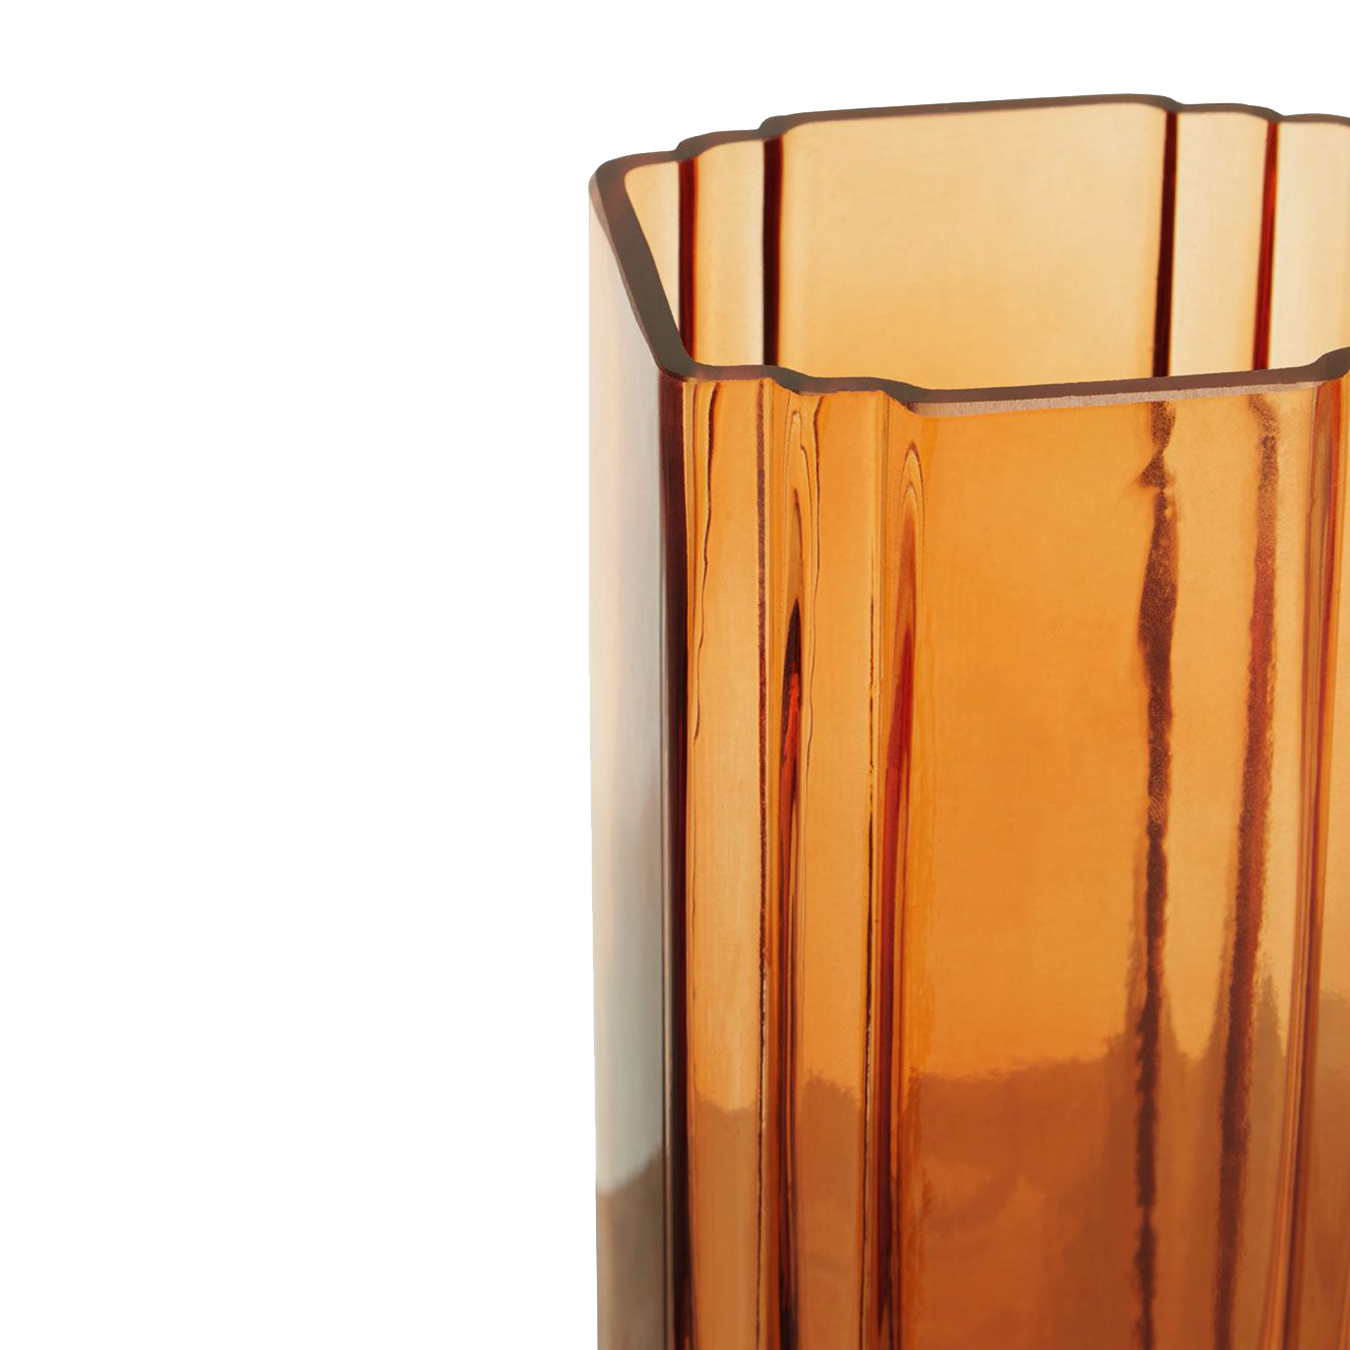 Orange Glass Vase Large